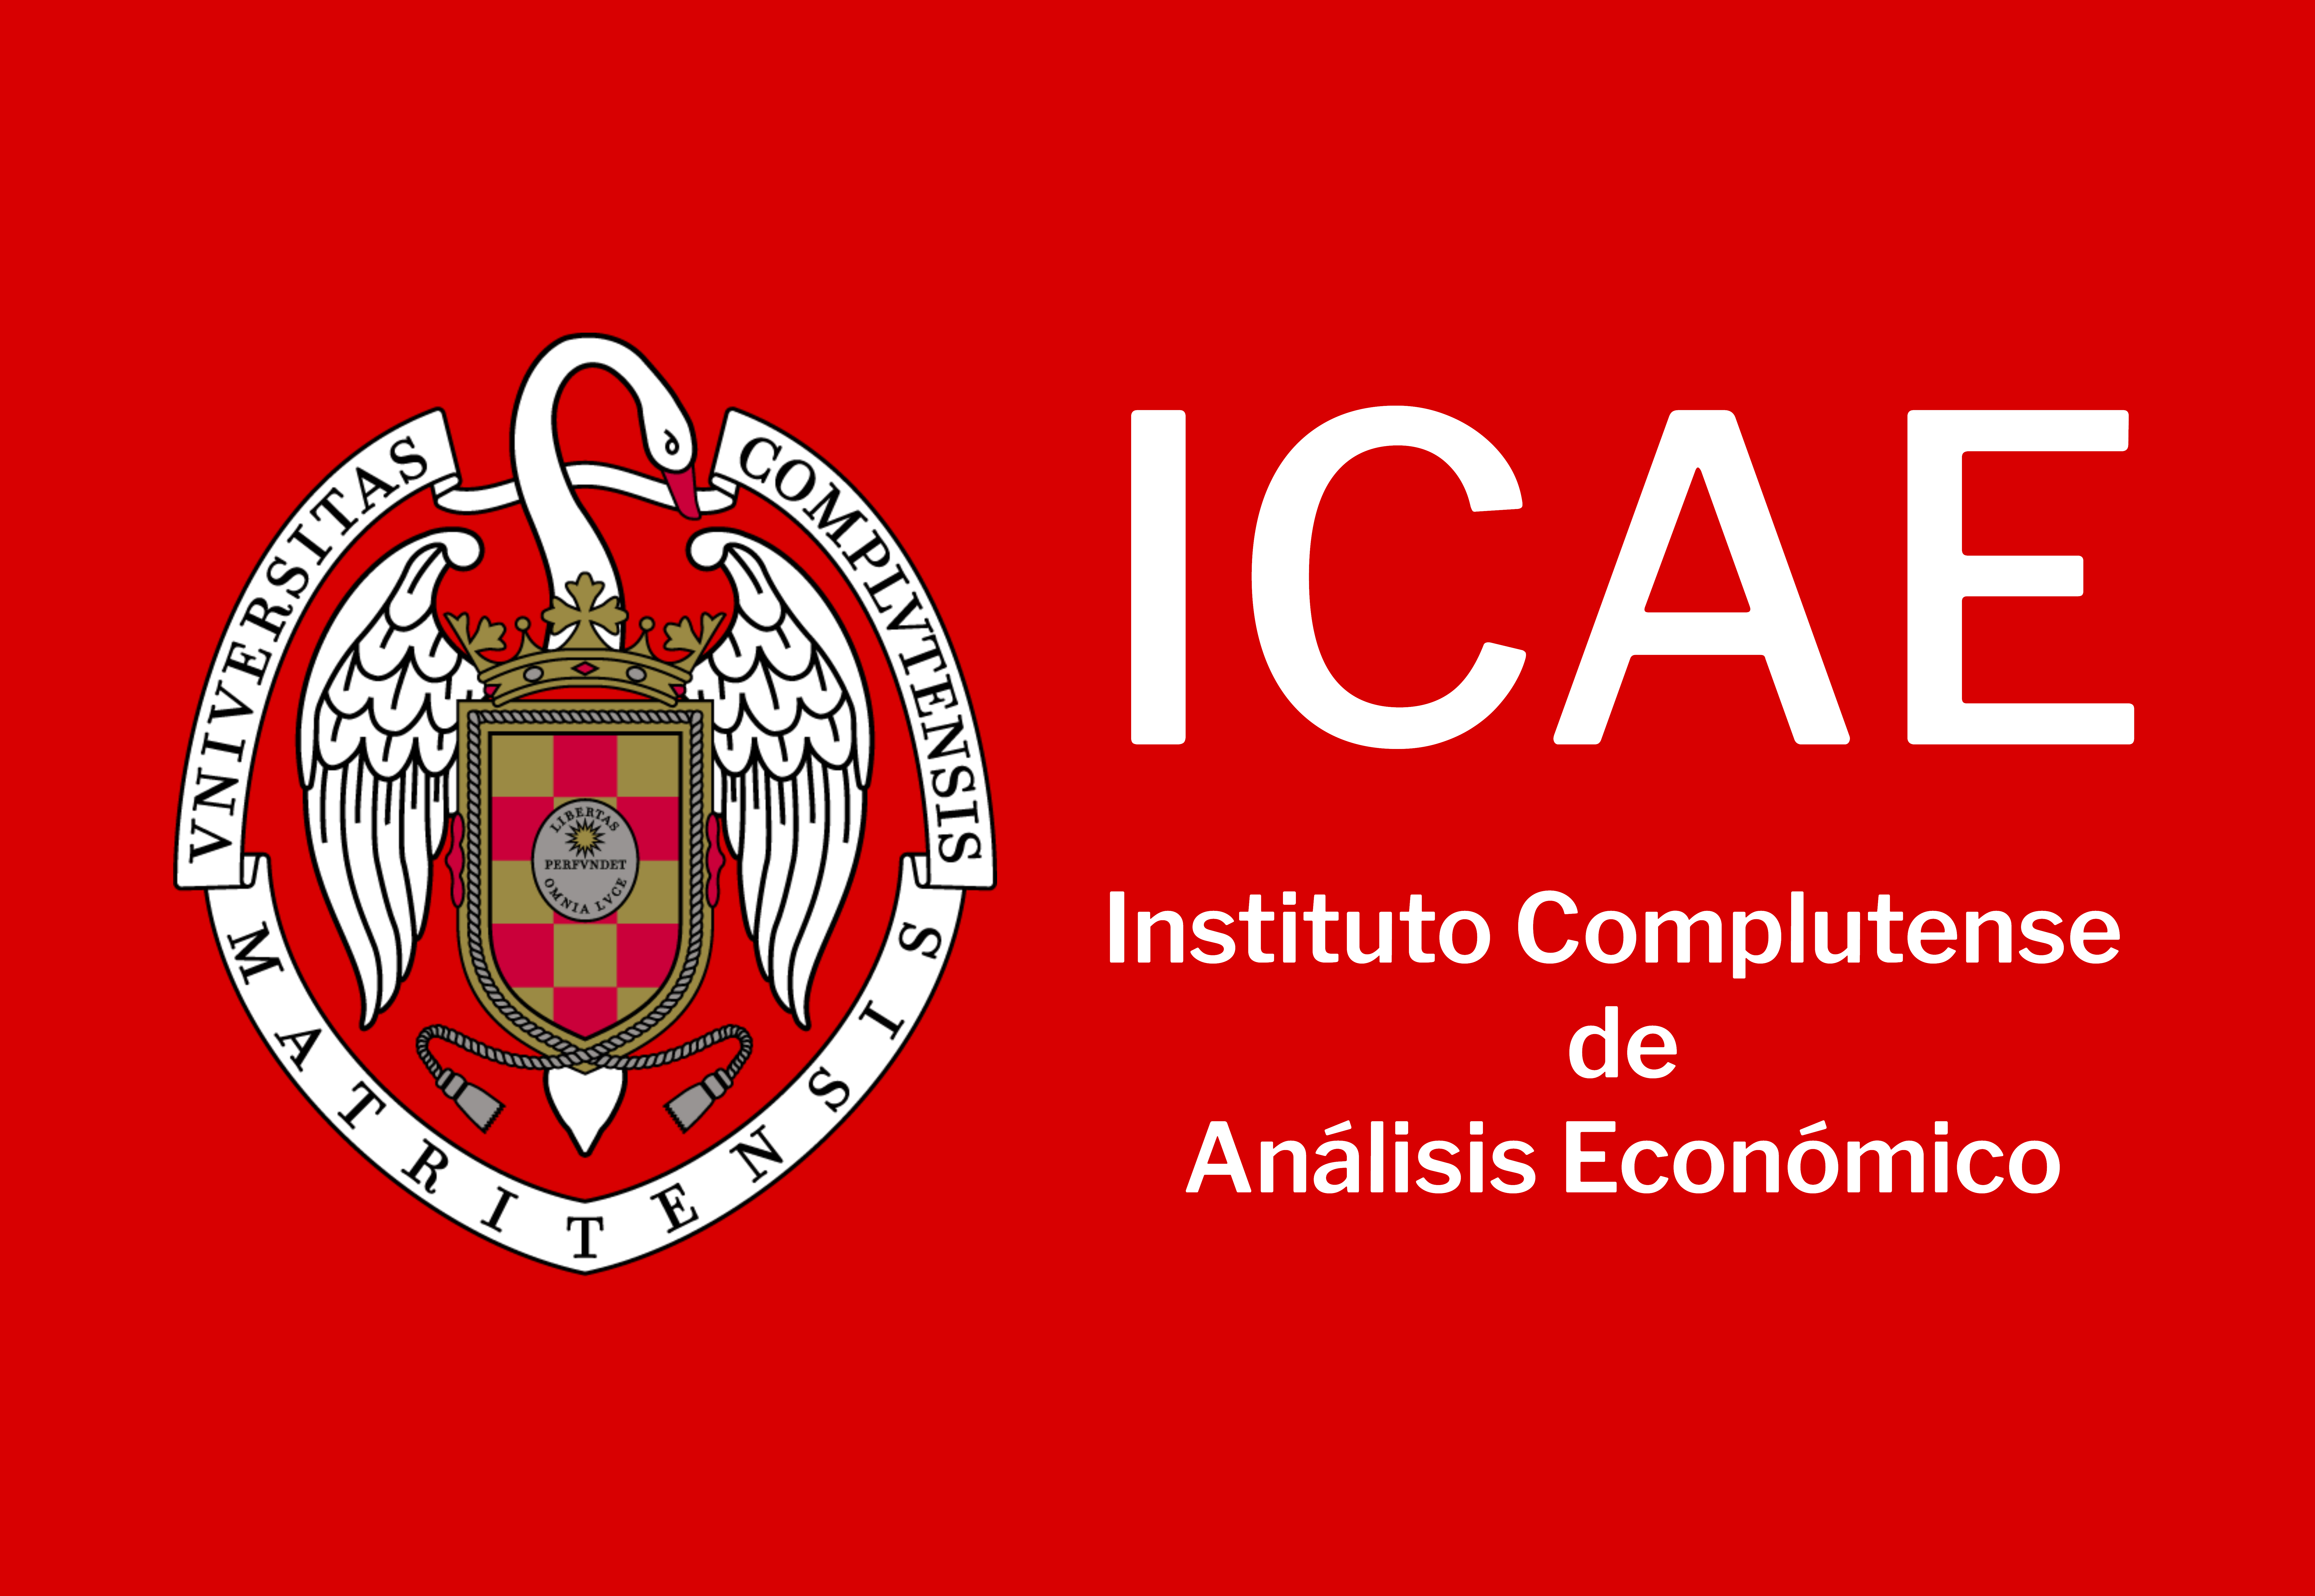 Logo ICAE 9.134 x 6.299 px JPG